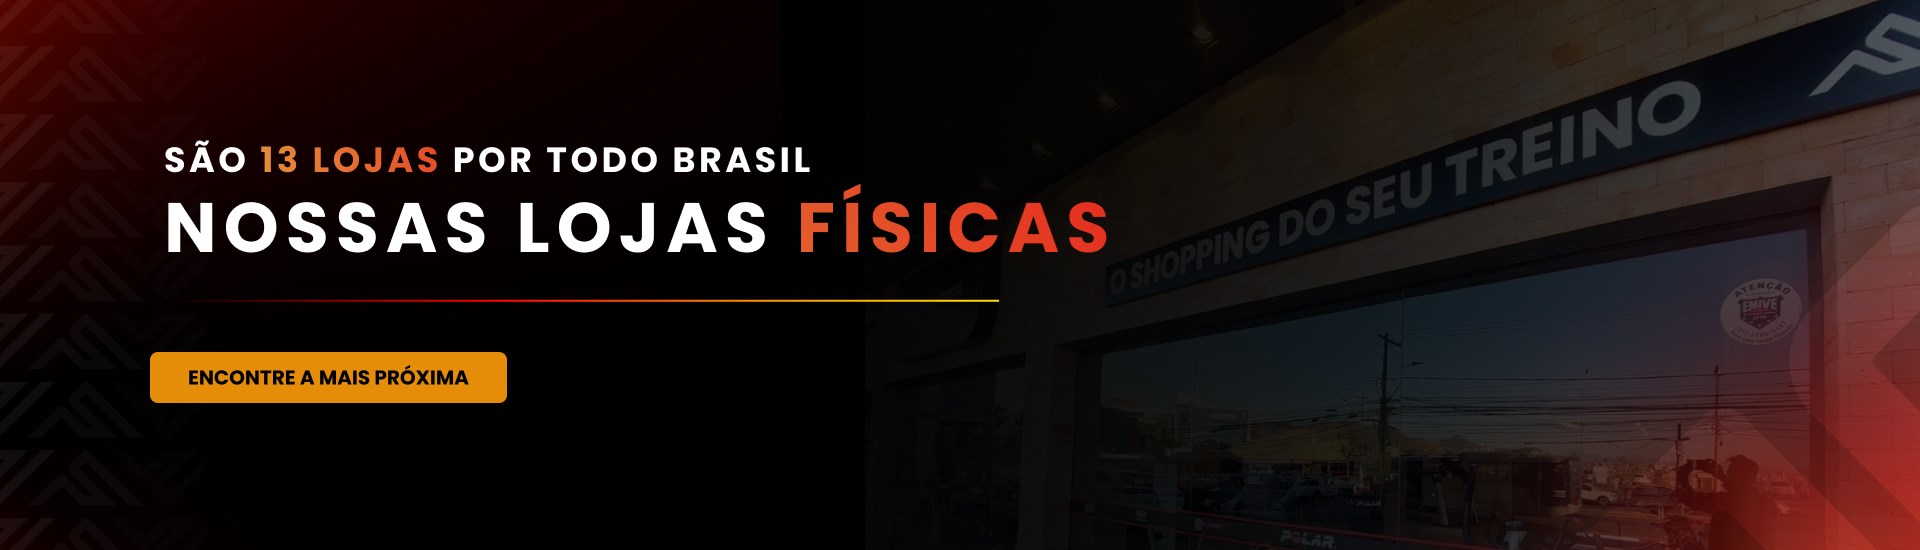 São 13 lojas por todo Brasil. Nossas lojas físicas.